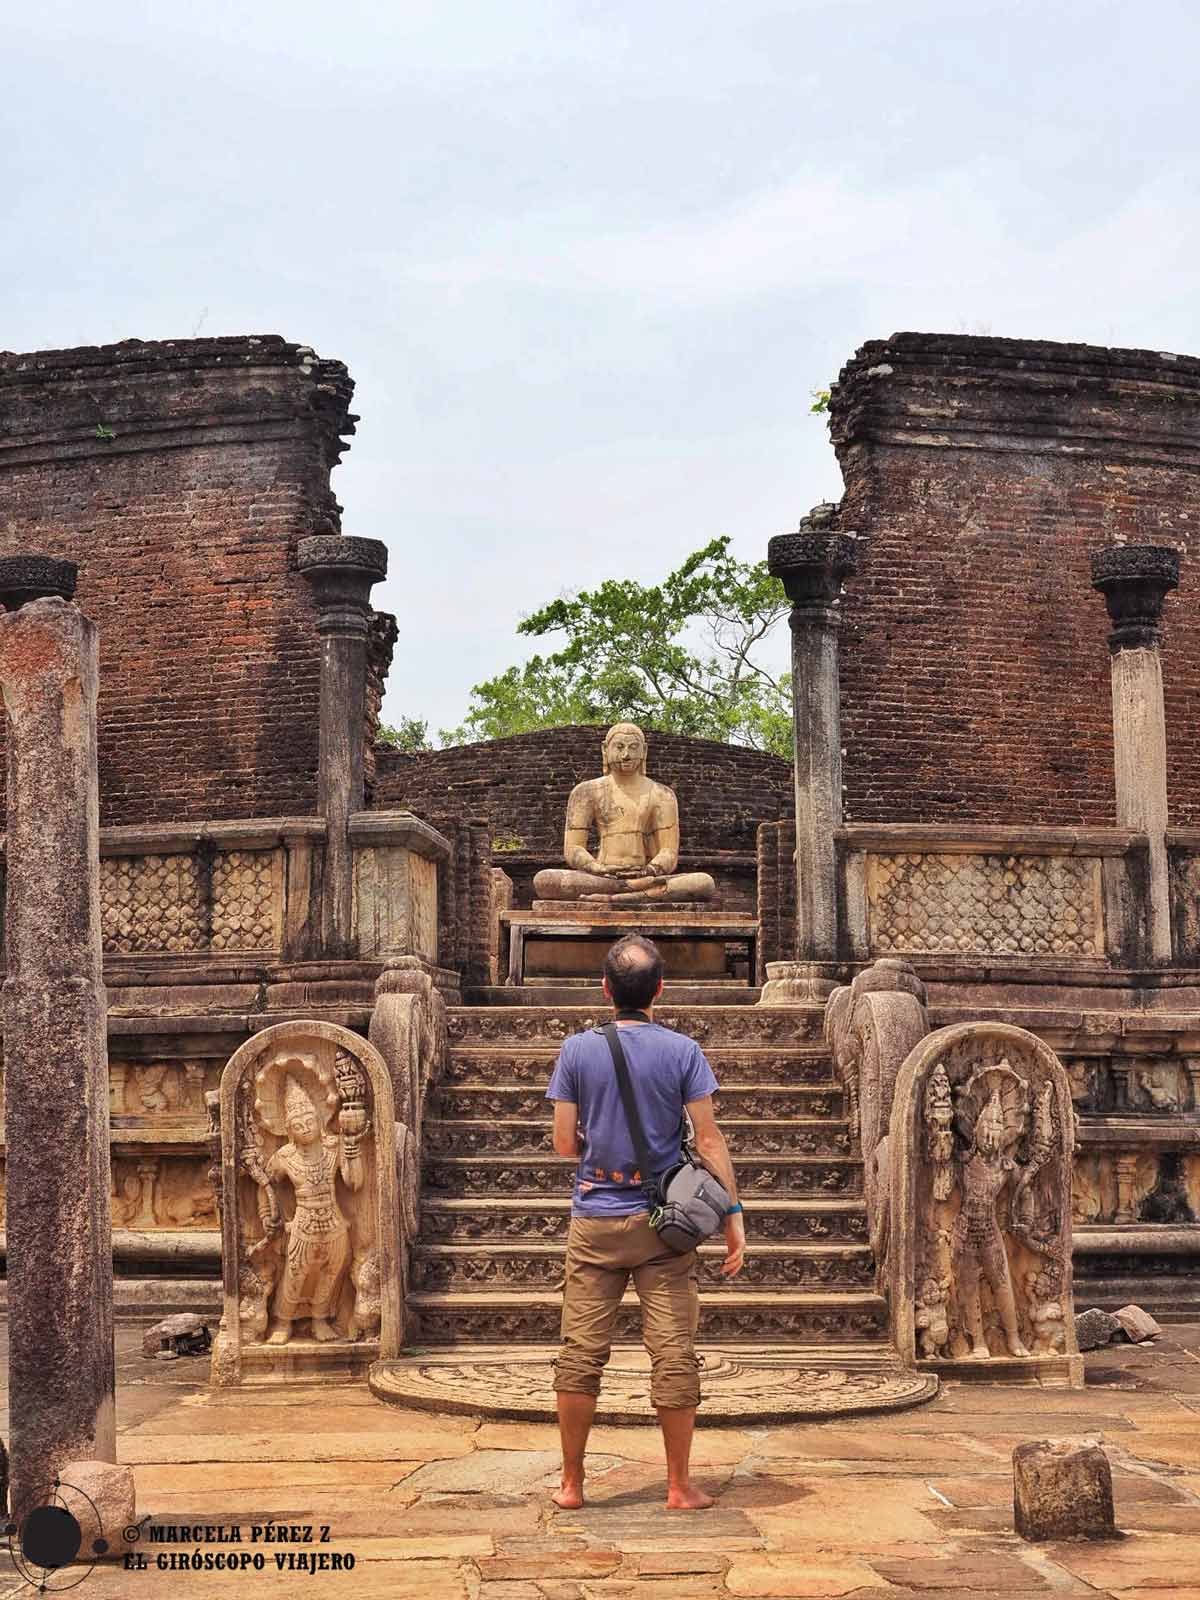 No hay que dar la espalda a las estatuas de Buda para las fotos